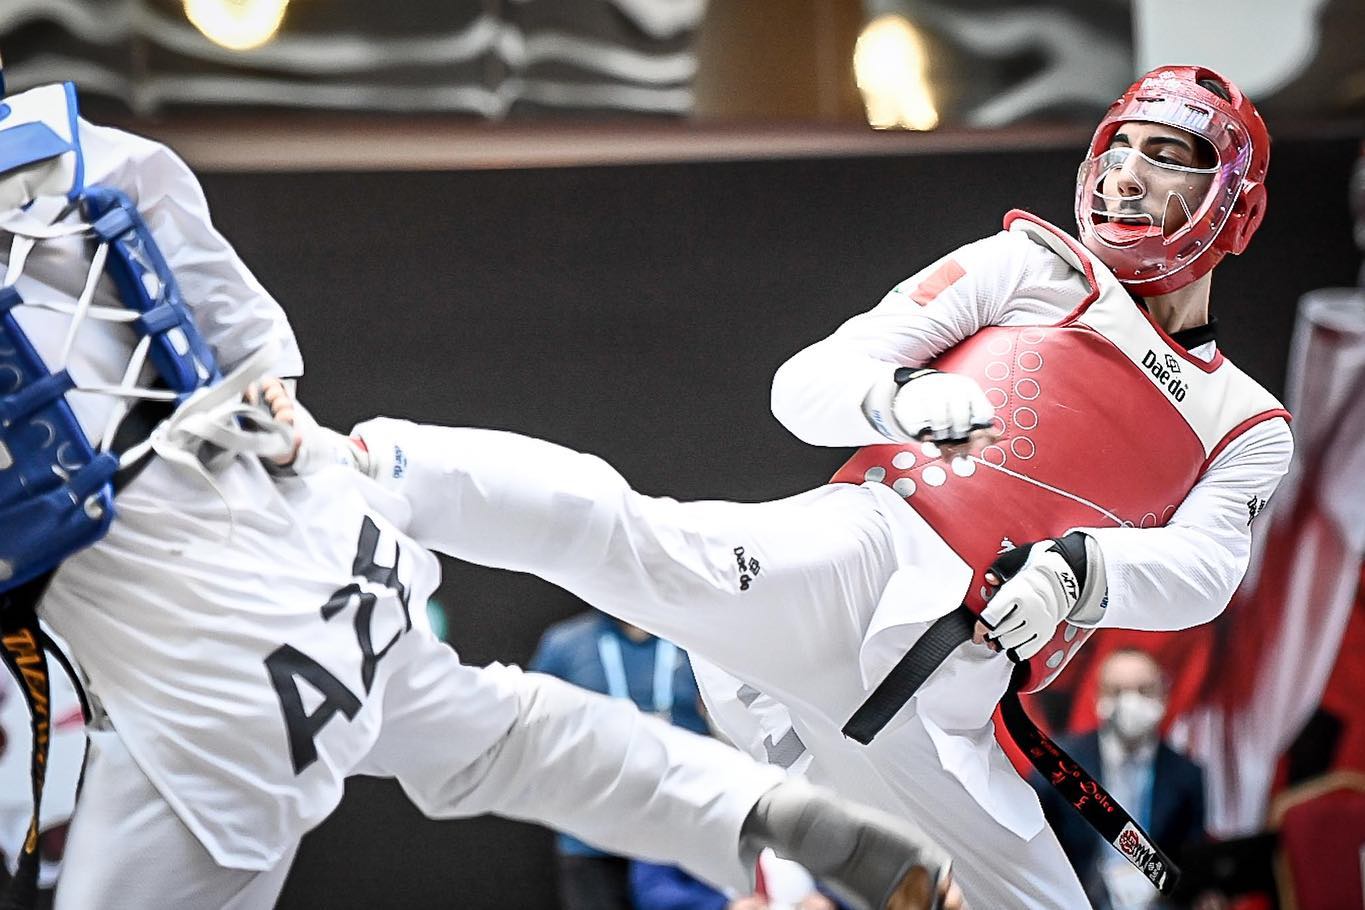 Campionati Mondiali Para Taekwondo 2021: Bossolo è Argento!